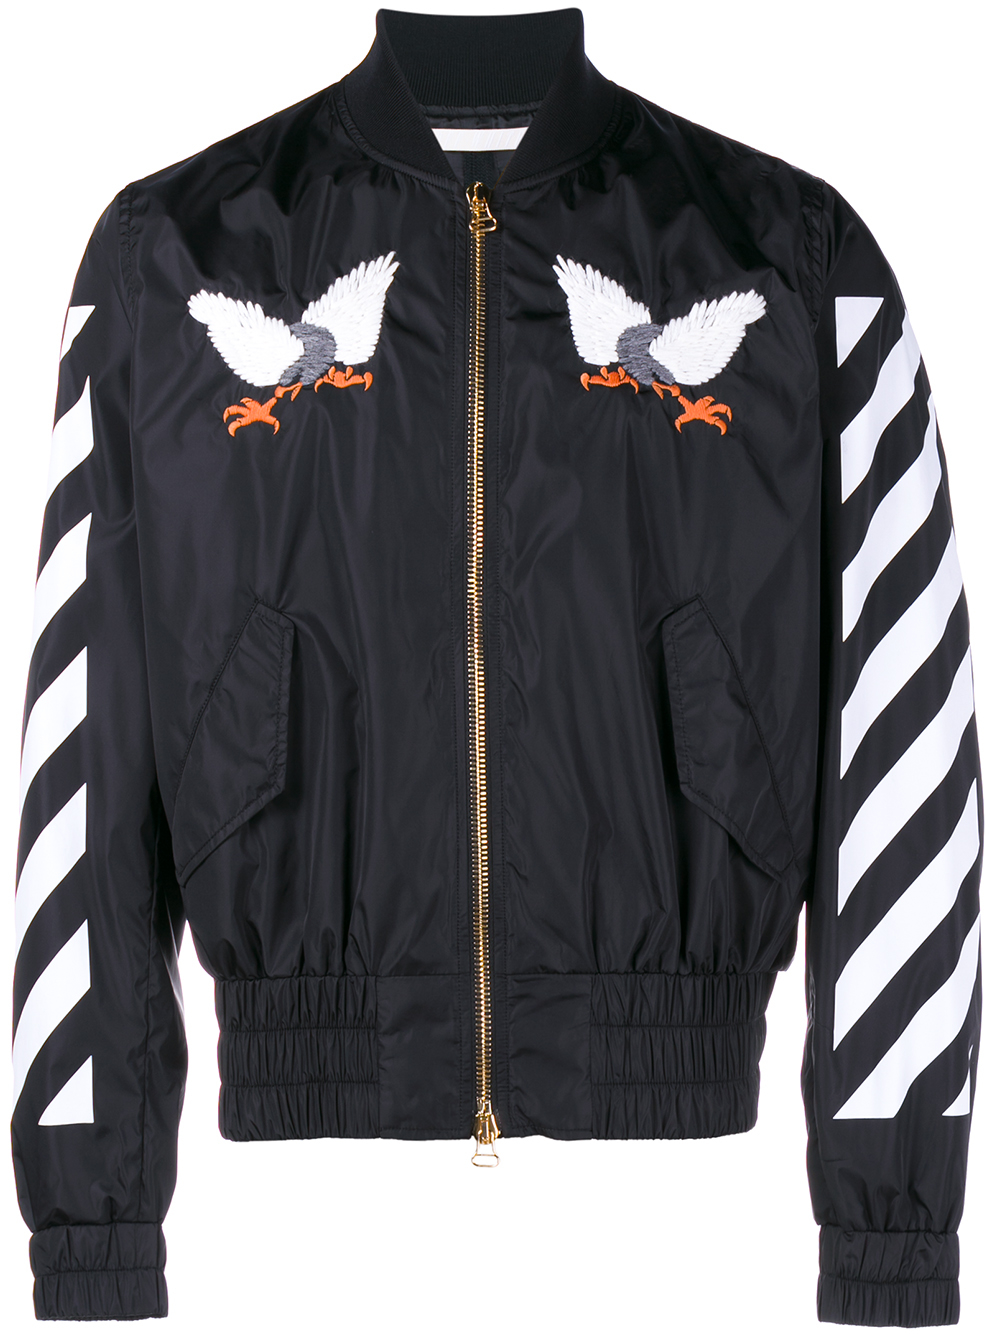 off white nike eagle jacket